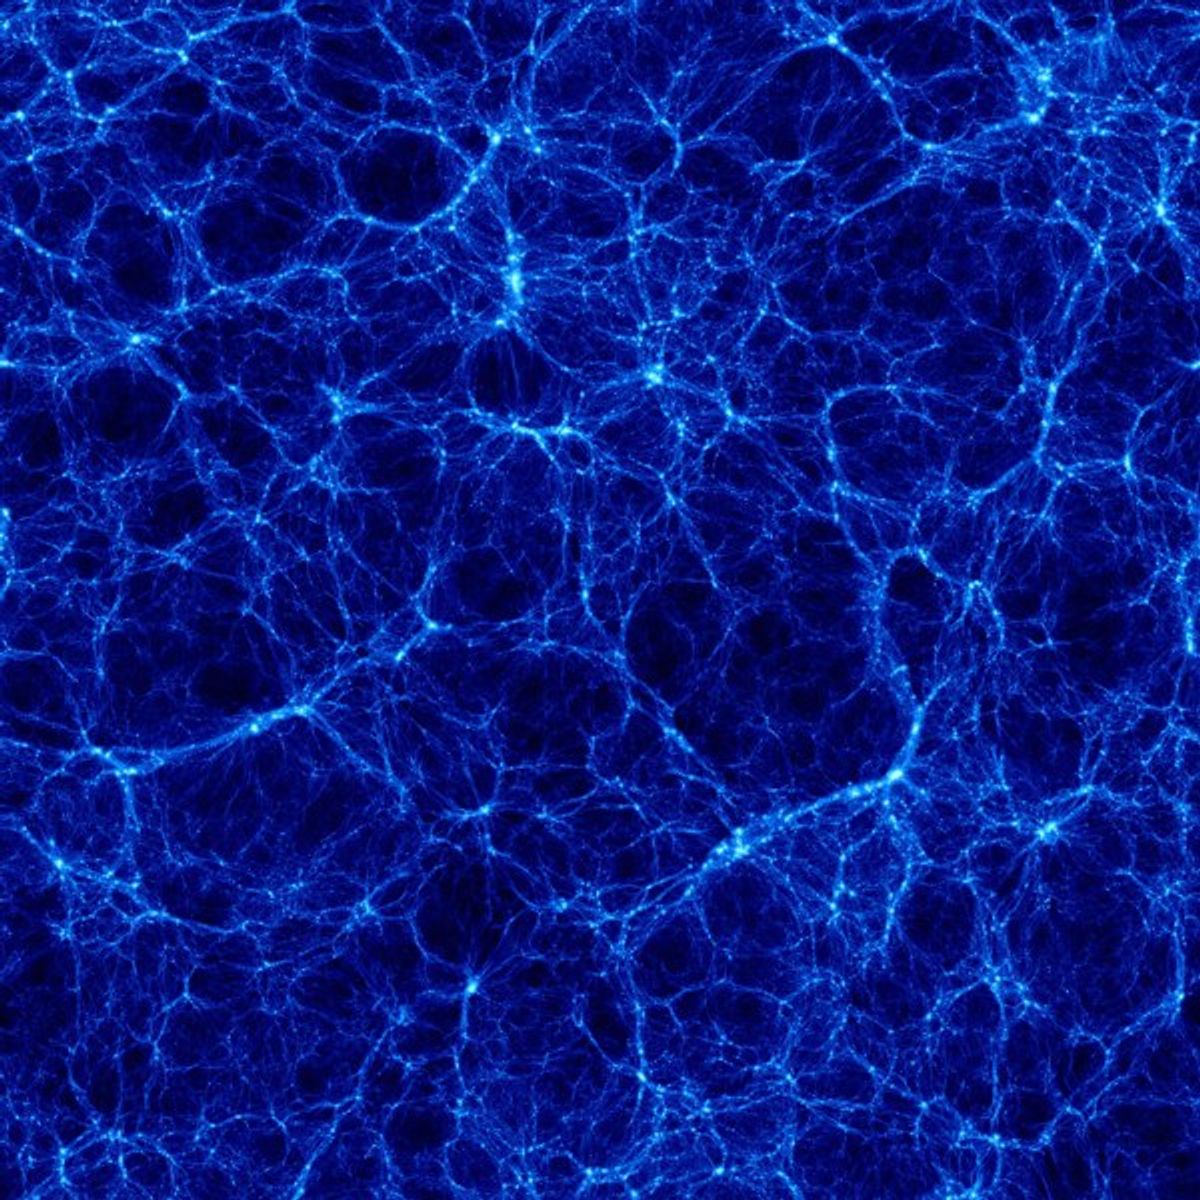 The Mystery Enshrouding Dark Matter